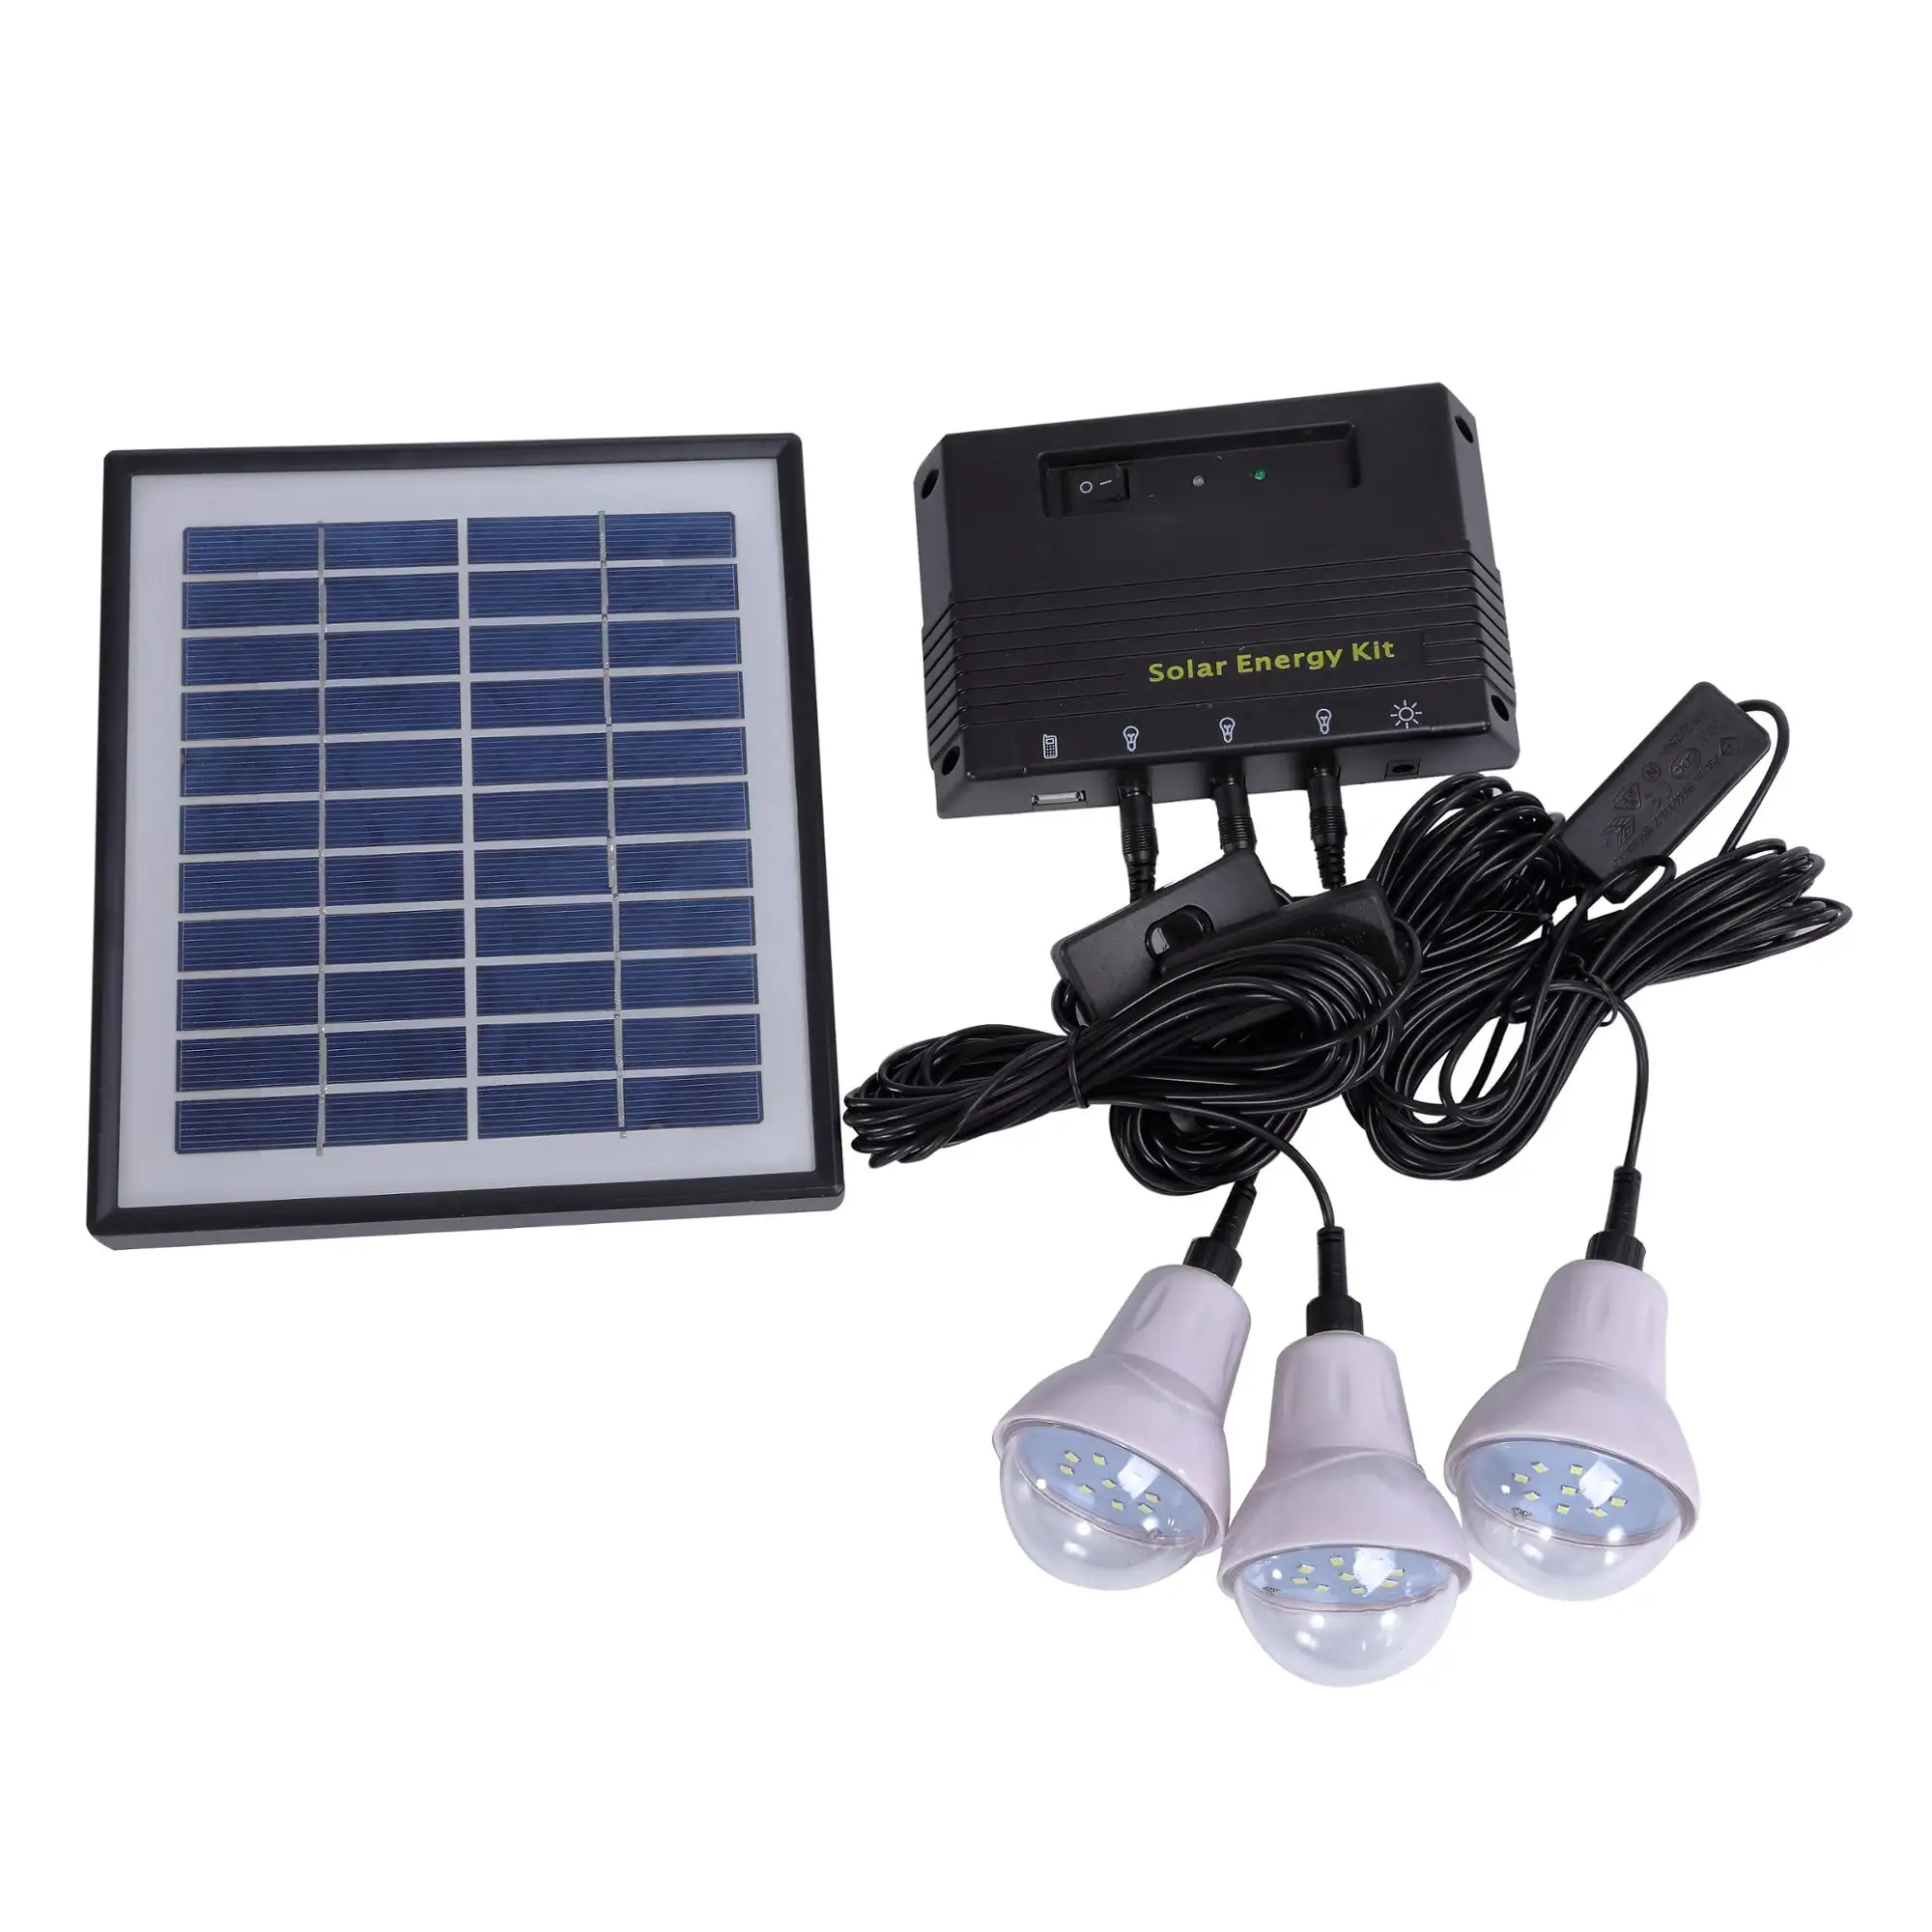 Kit de acampamento solar patenteado único, com luzes led para iluminação doméstica, iluminação de emergência e atividades ao ar livre